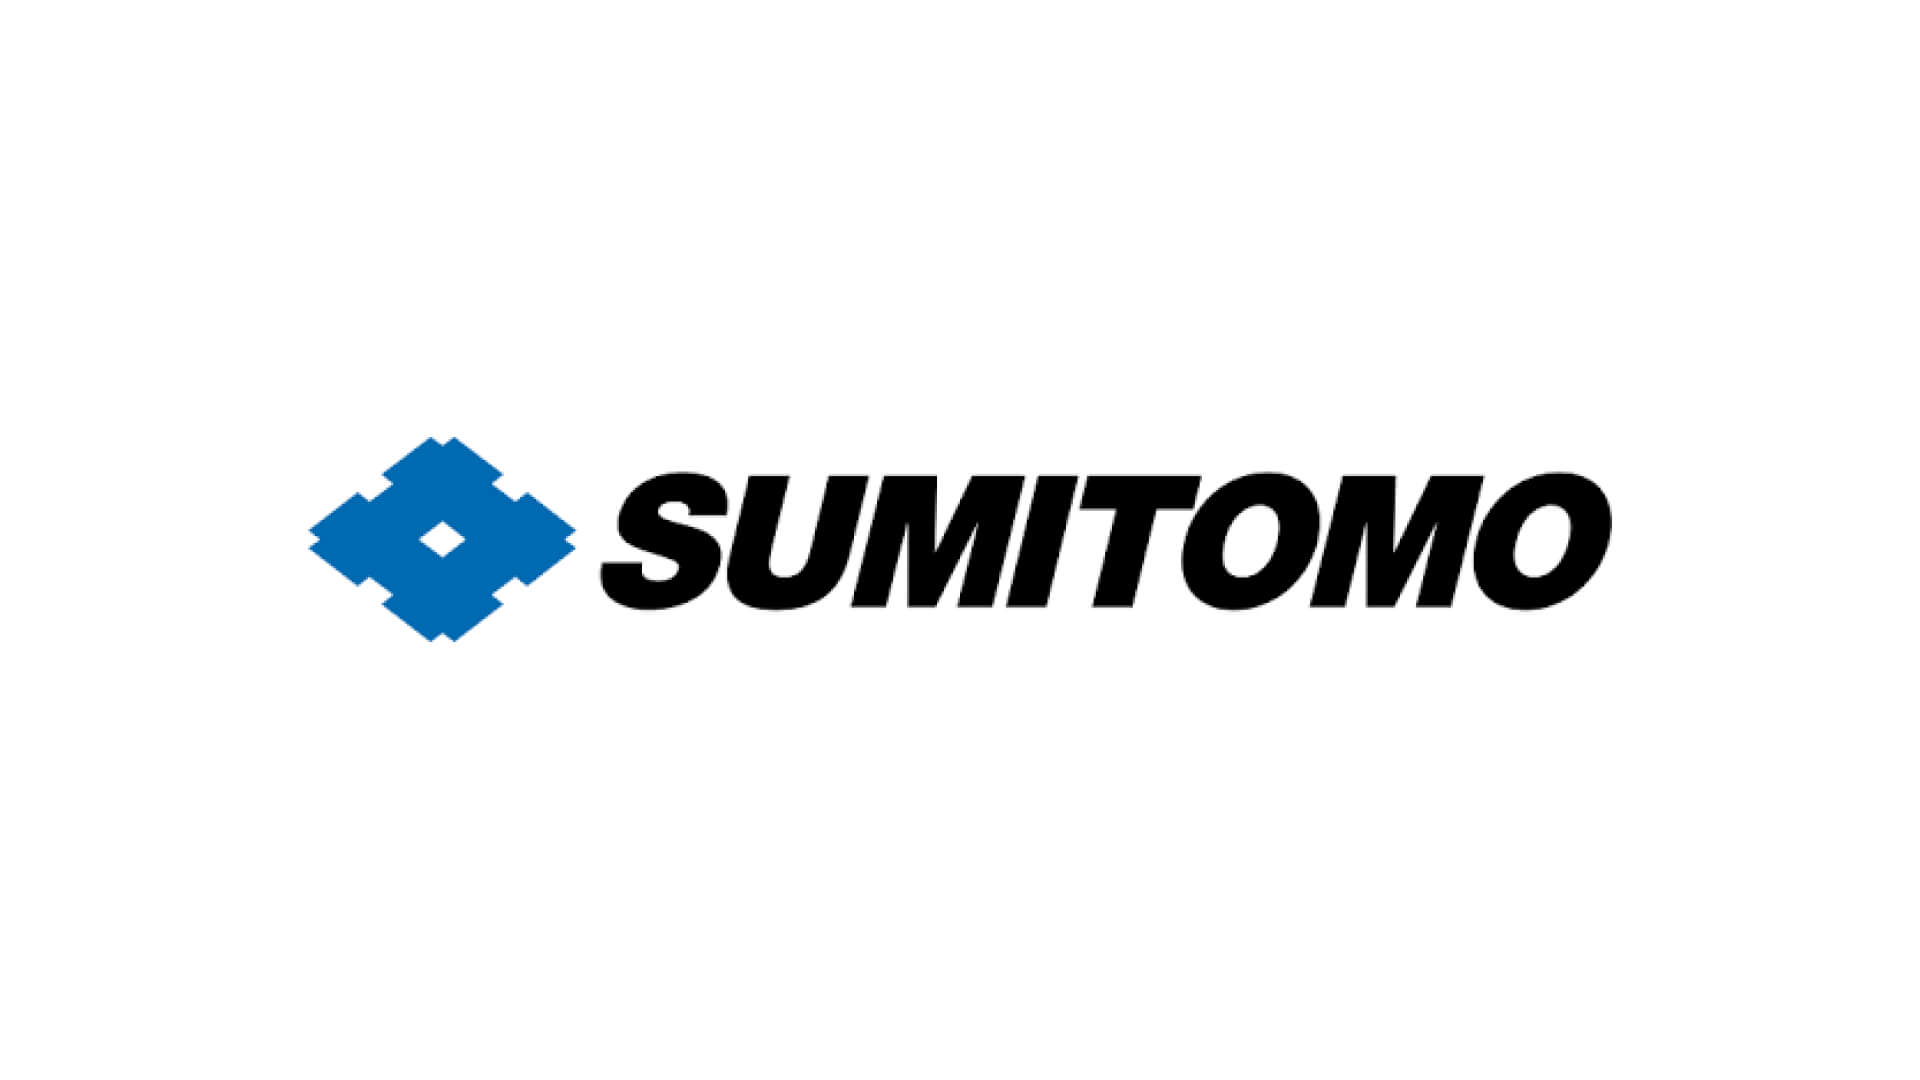 Sumitomo logo in color